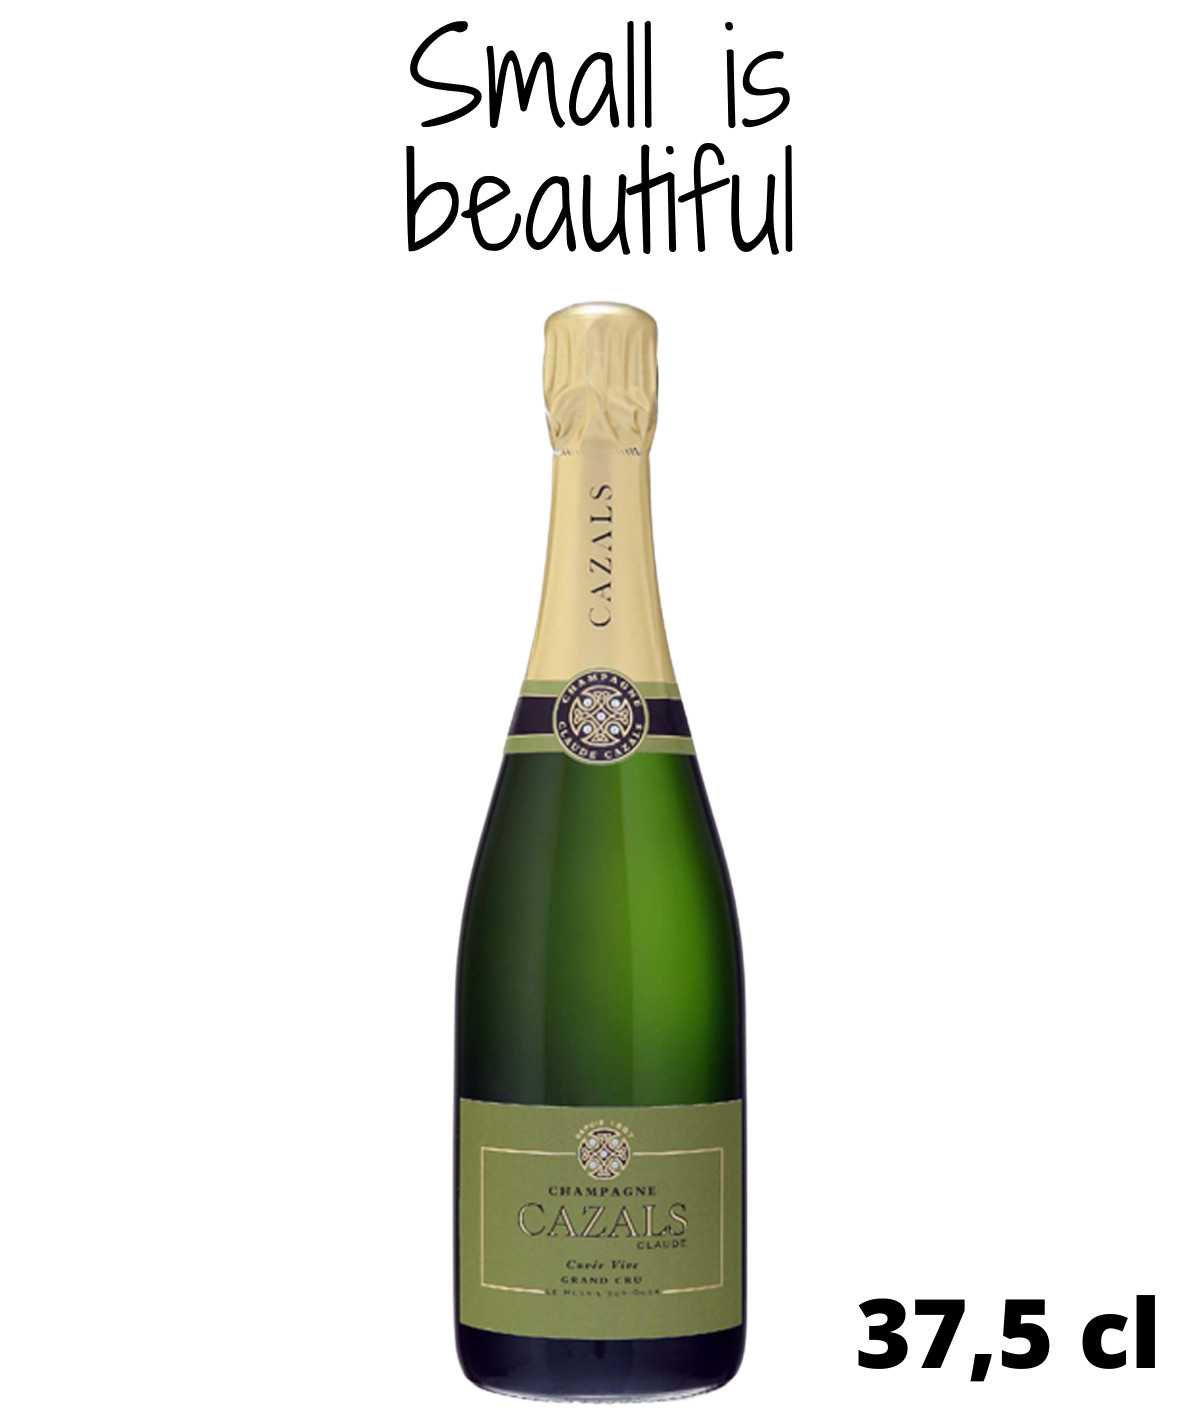 Demi-Bouteille de champagne CLAUDE CAZALS Cuvée Vive Grand Cru